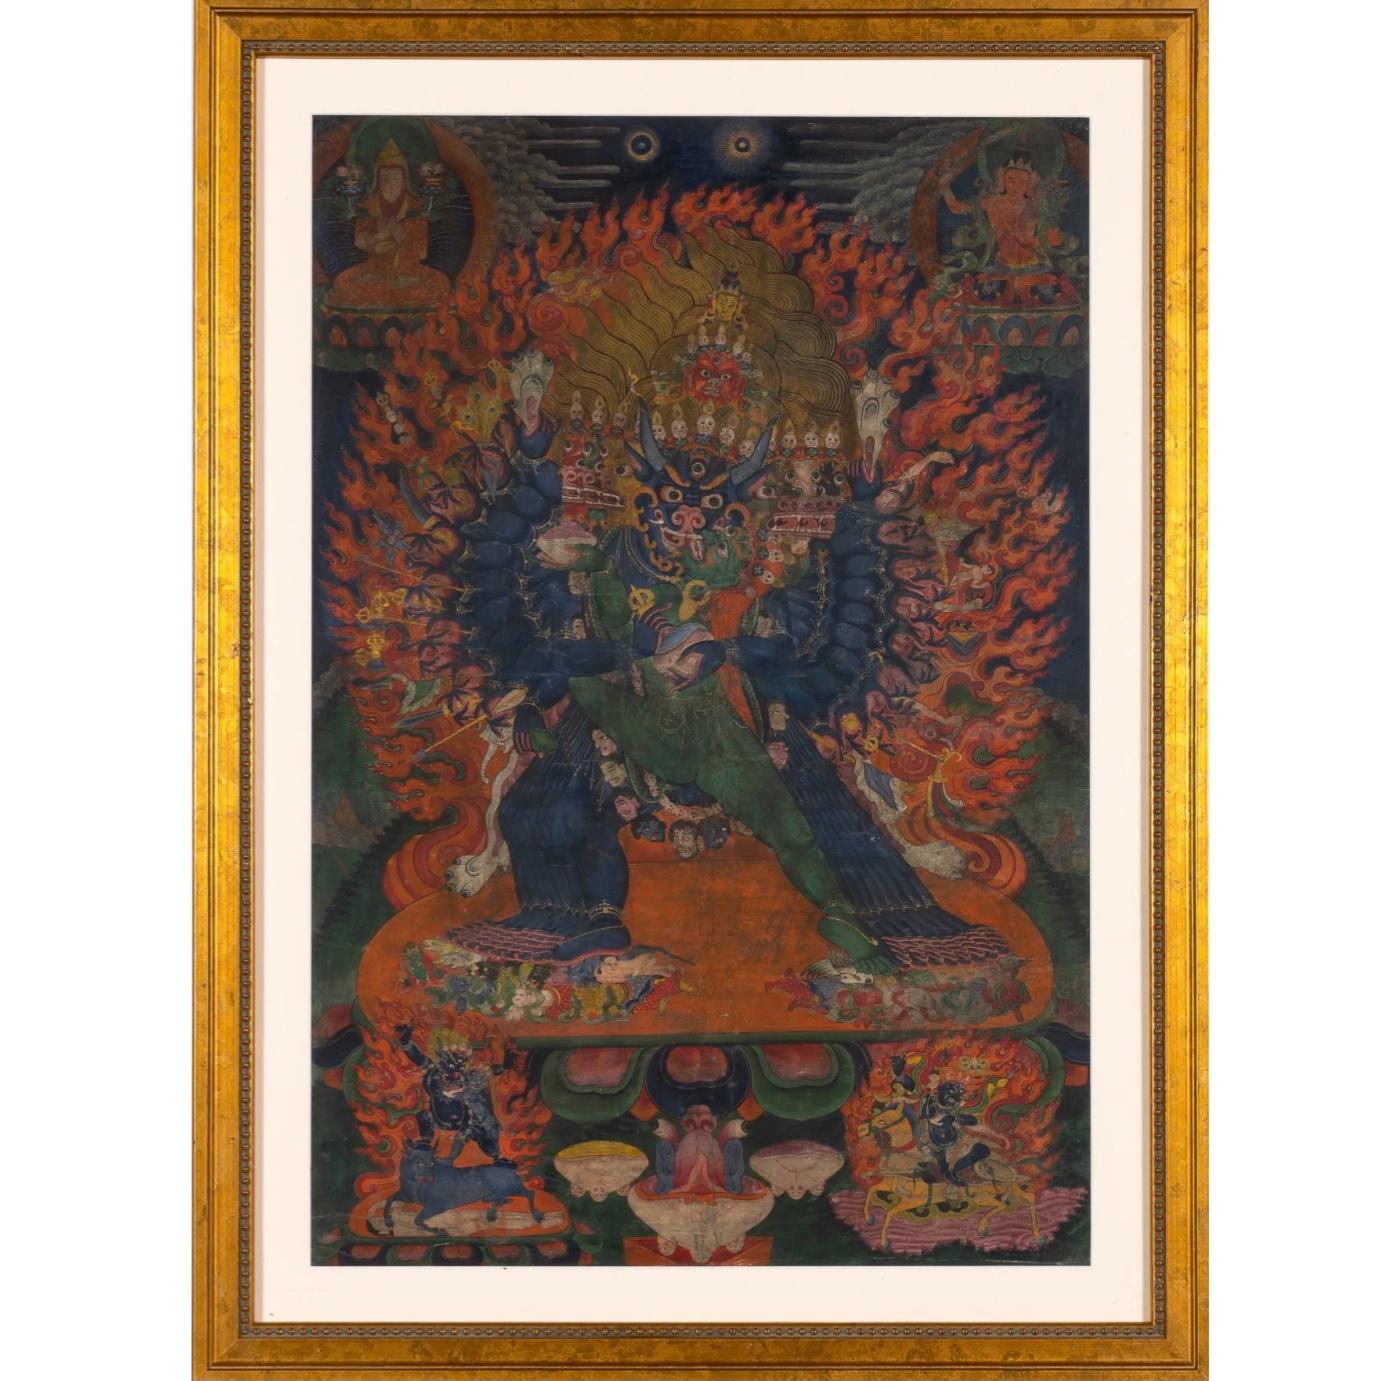 Hand-Painted Tibetan Yamantaka Thangka 17th- 18th Century